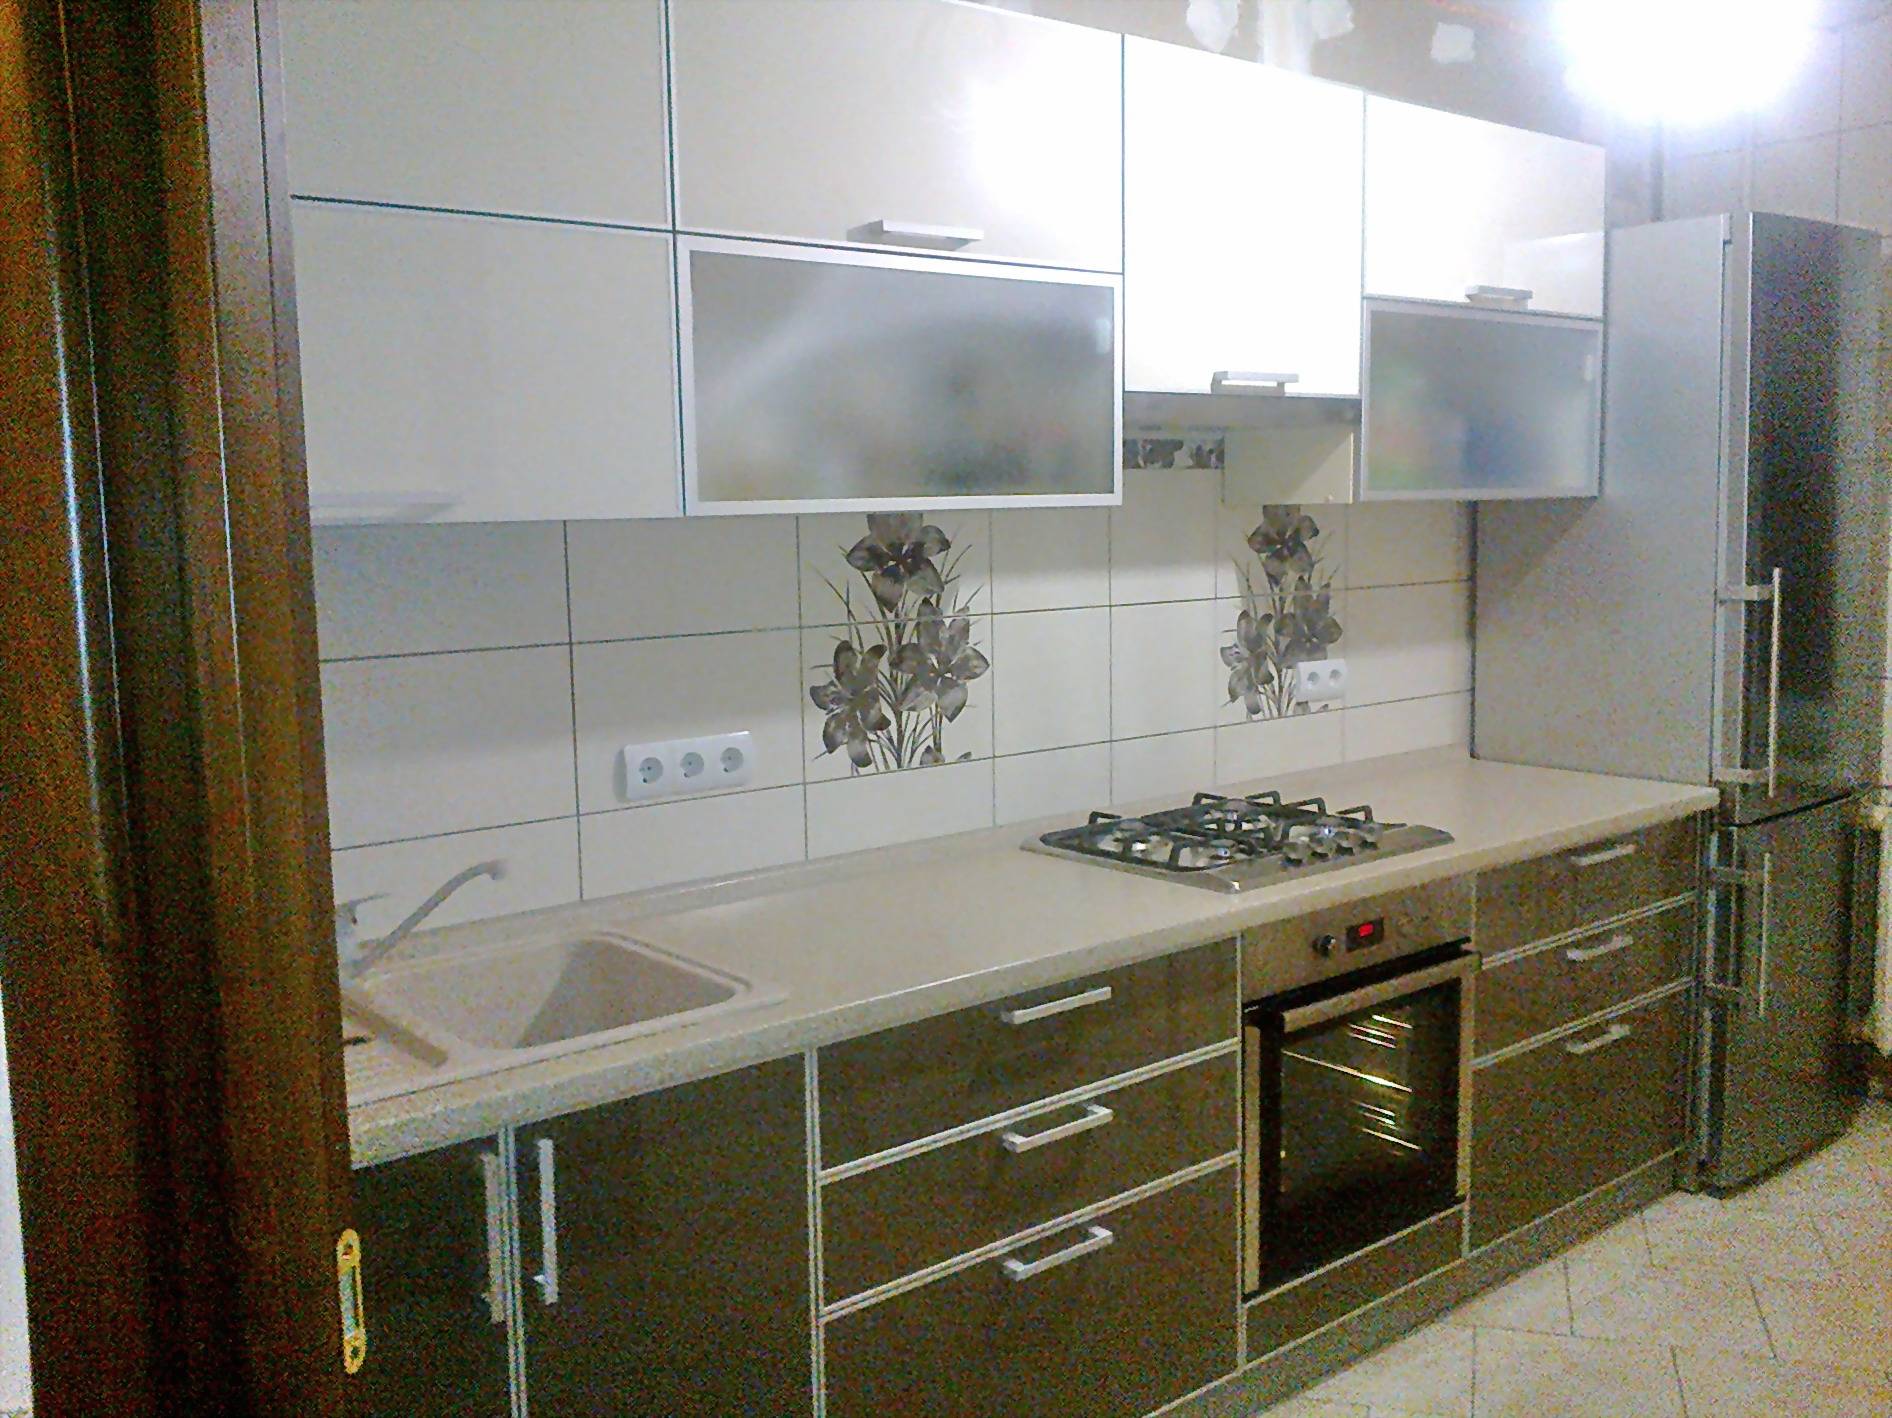 Кухни фасад в металлической рамке. кухонные фасады в алюминиевой рамке — особенности и преимущества. фасады мебельные из алюминиевых профилей с прозрачными и узорчатыми стеклами